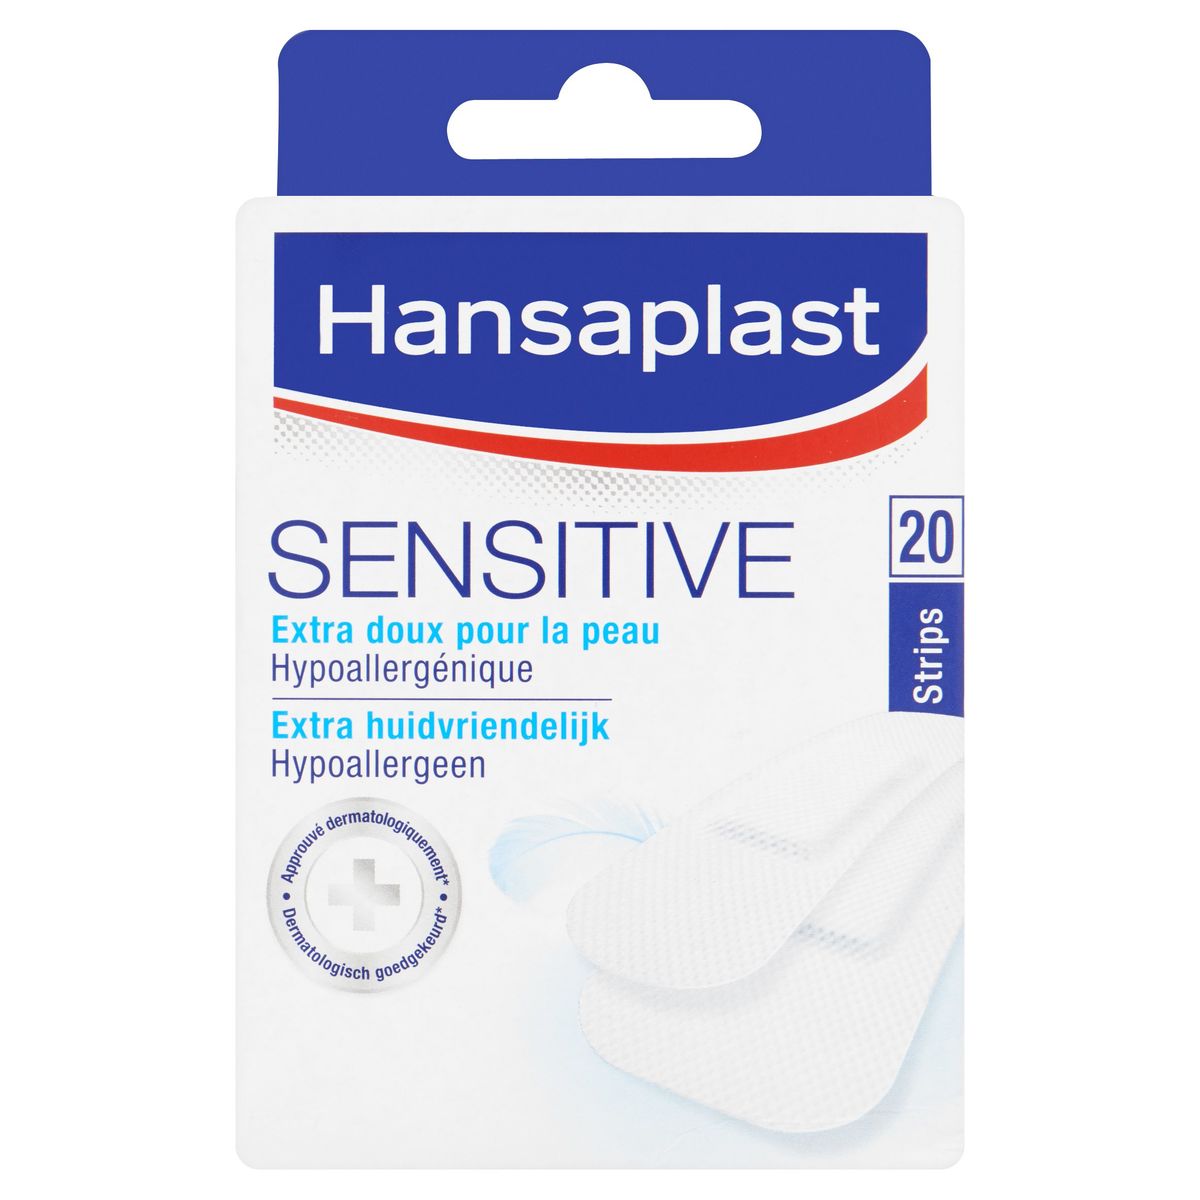 Hansaplast Sensitive Hypoallergeen 20 Strips